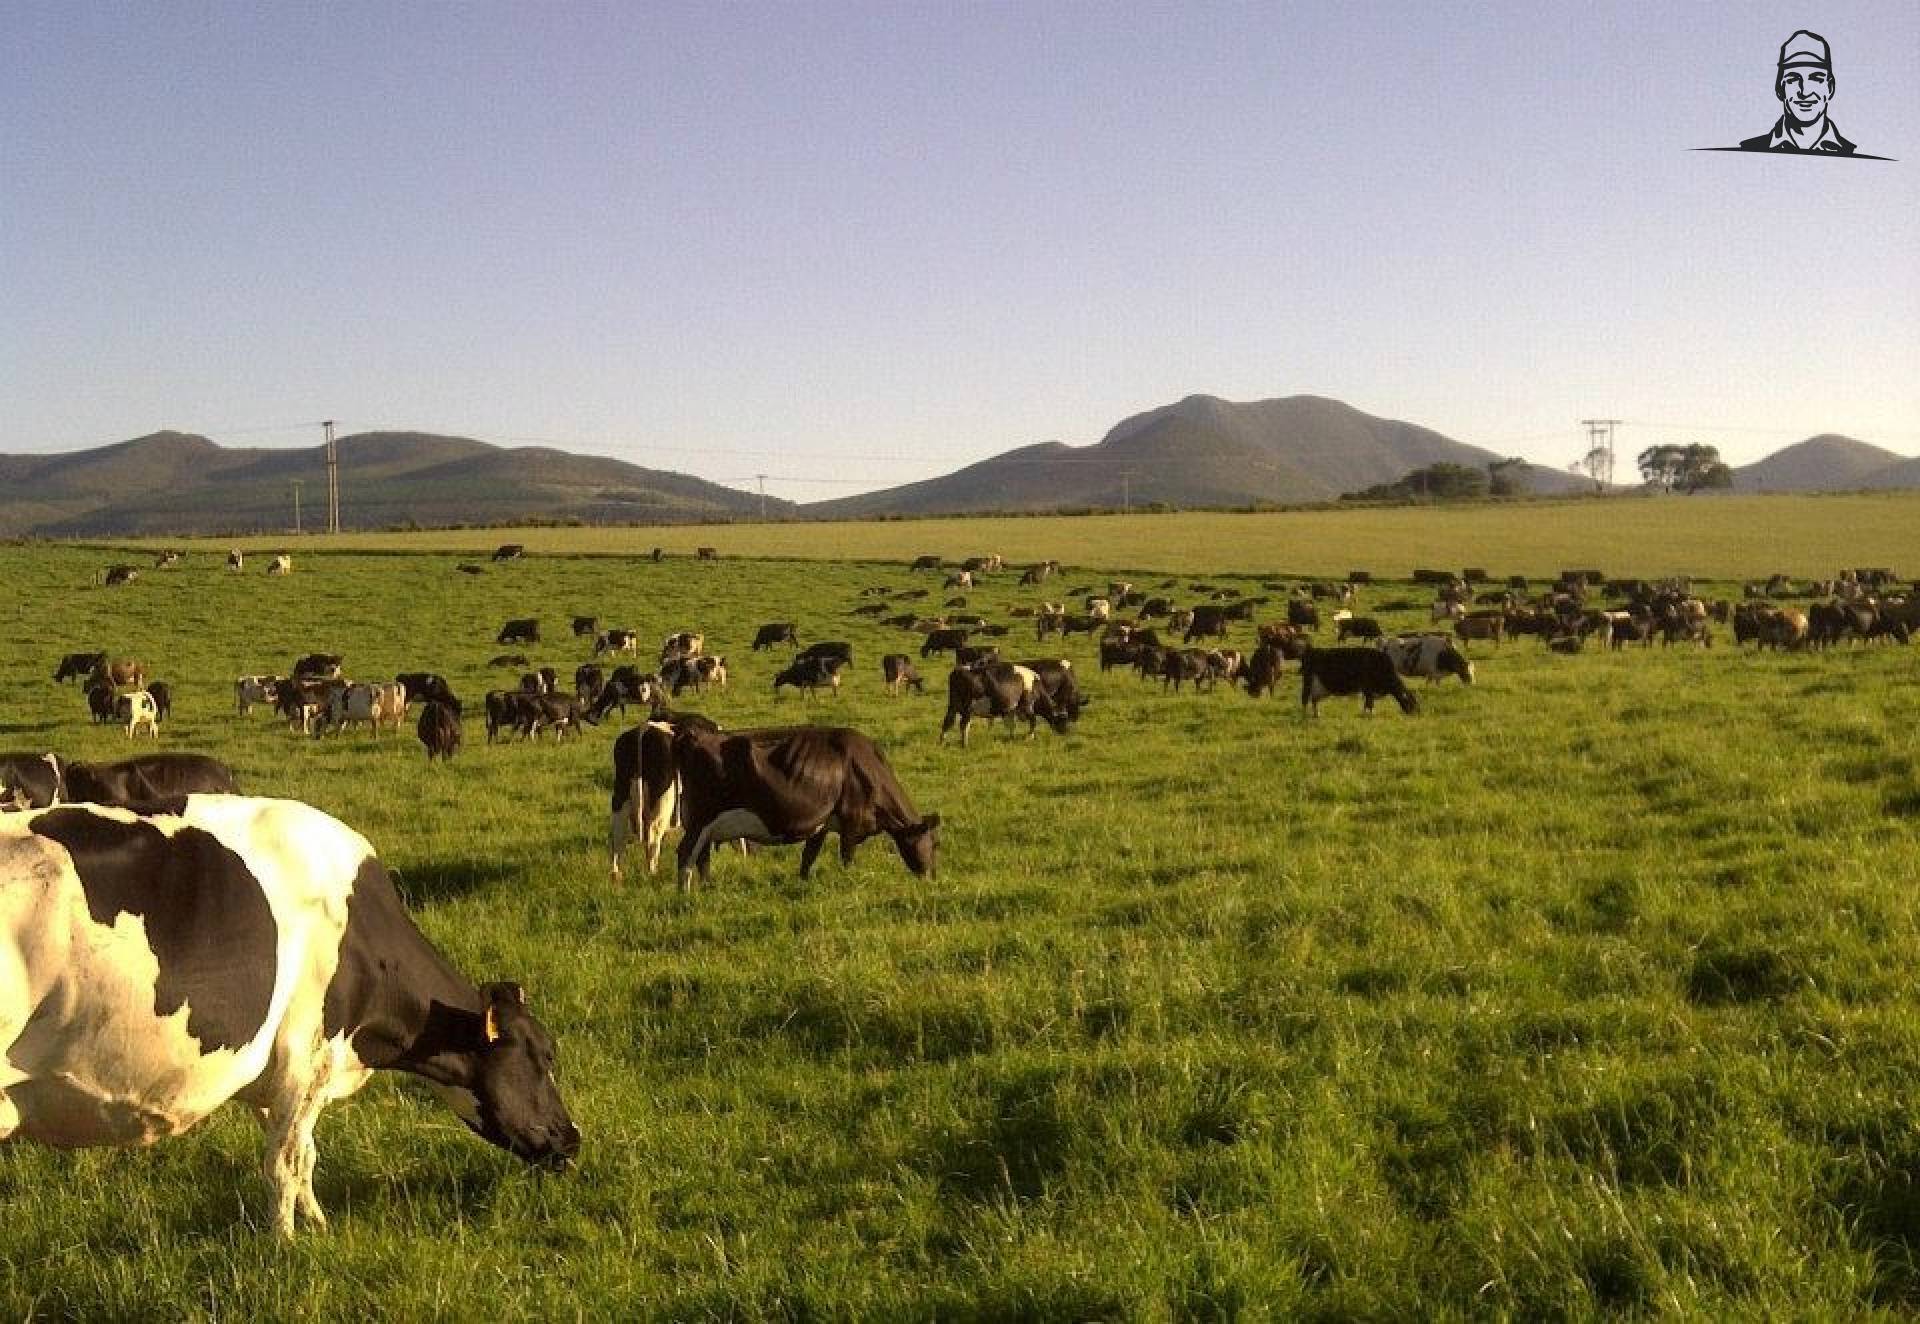 Koeien in de wei - Zuid-Afrika van Grasbaal